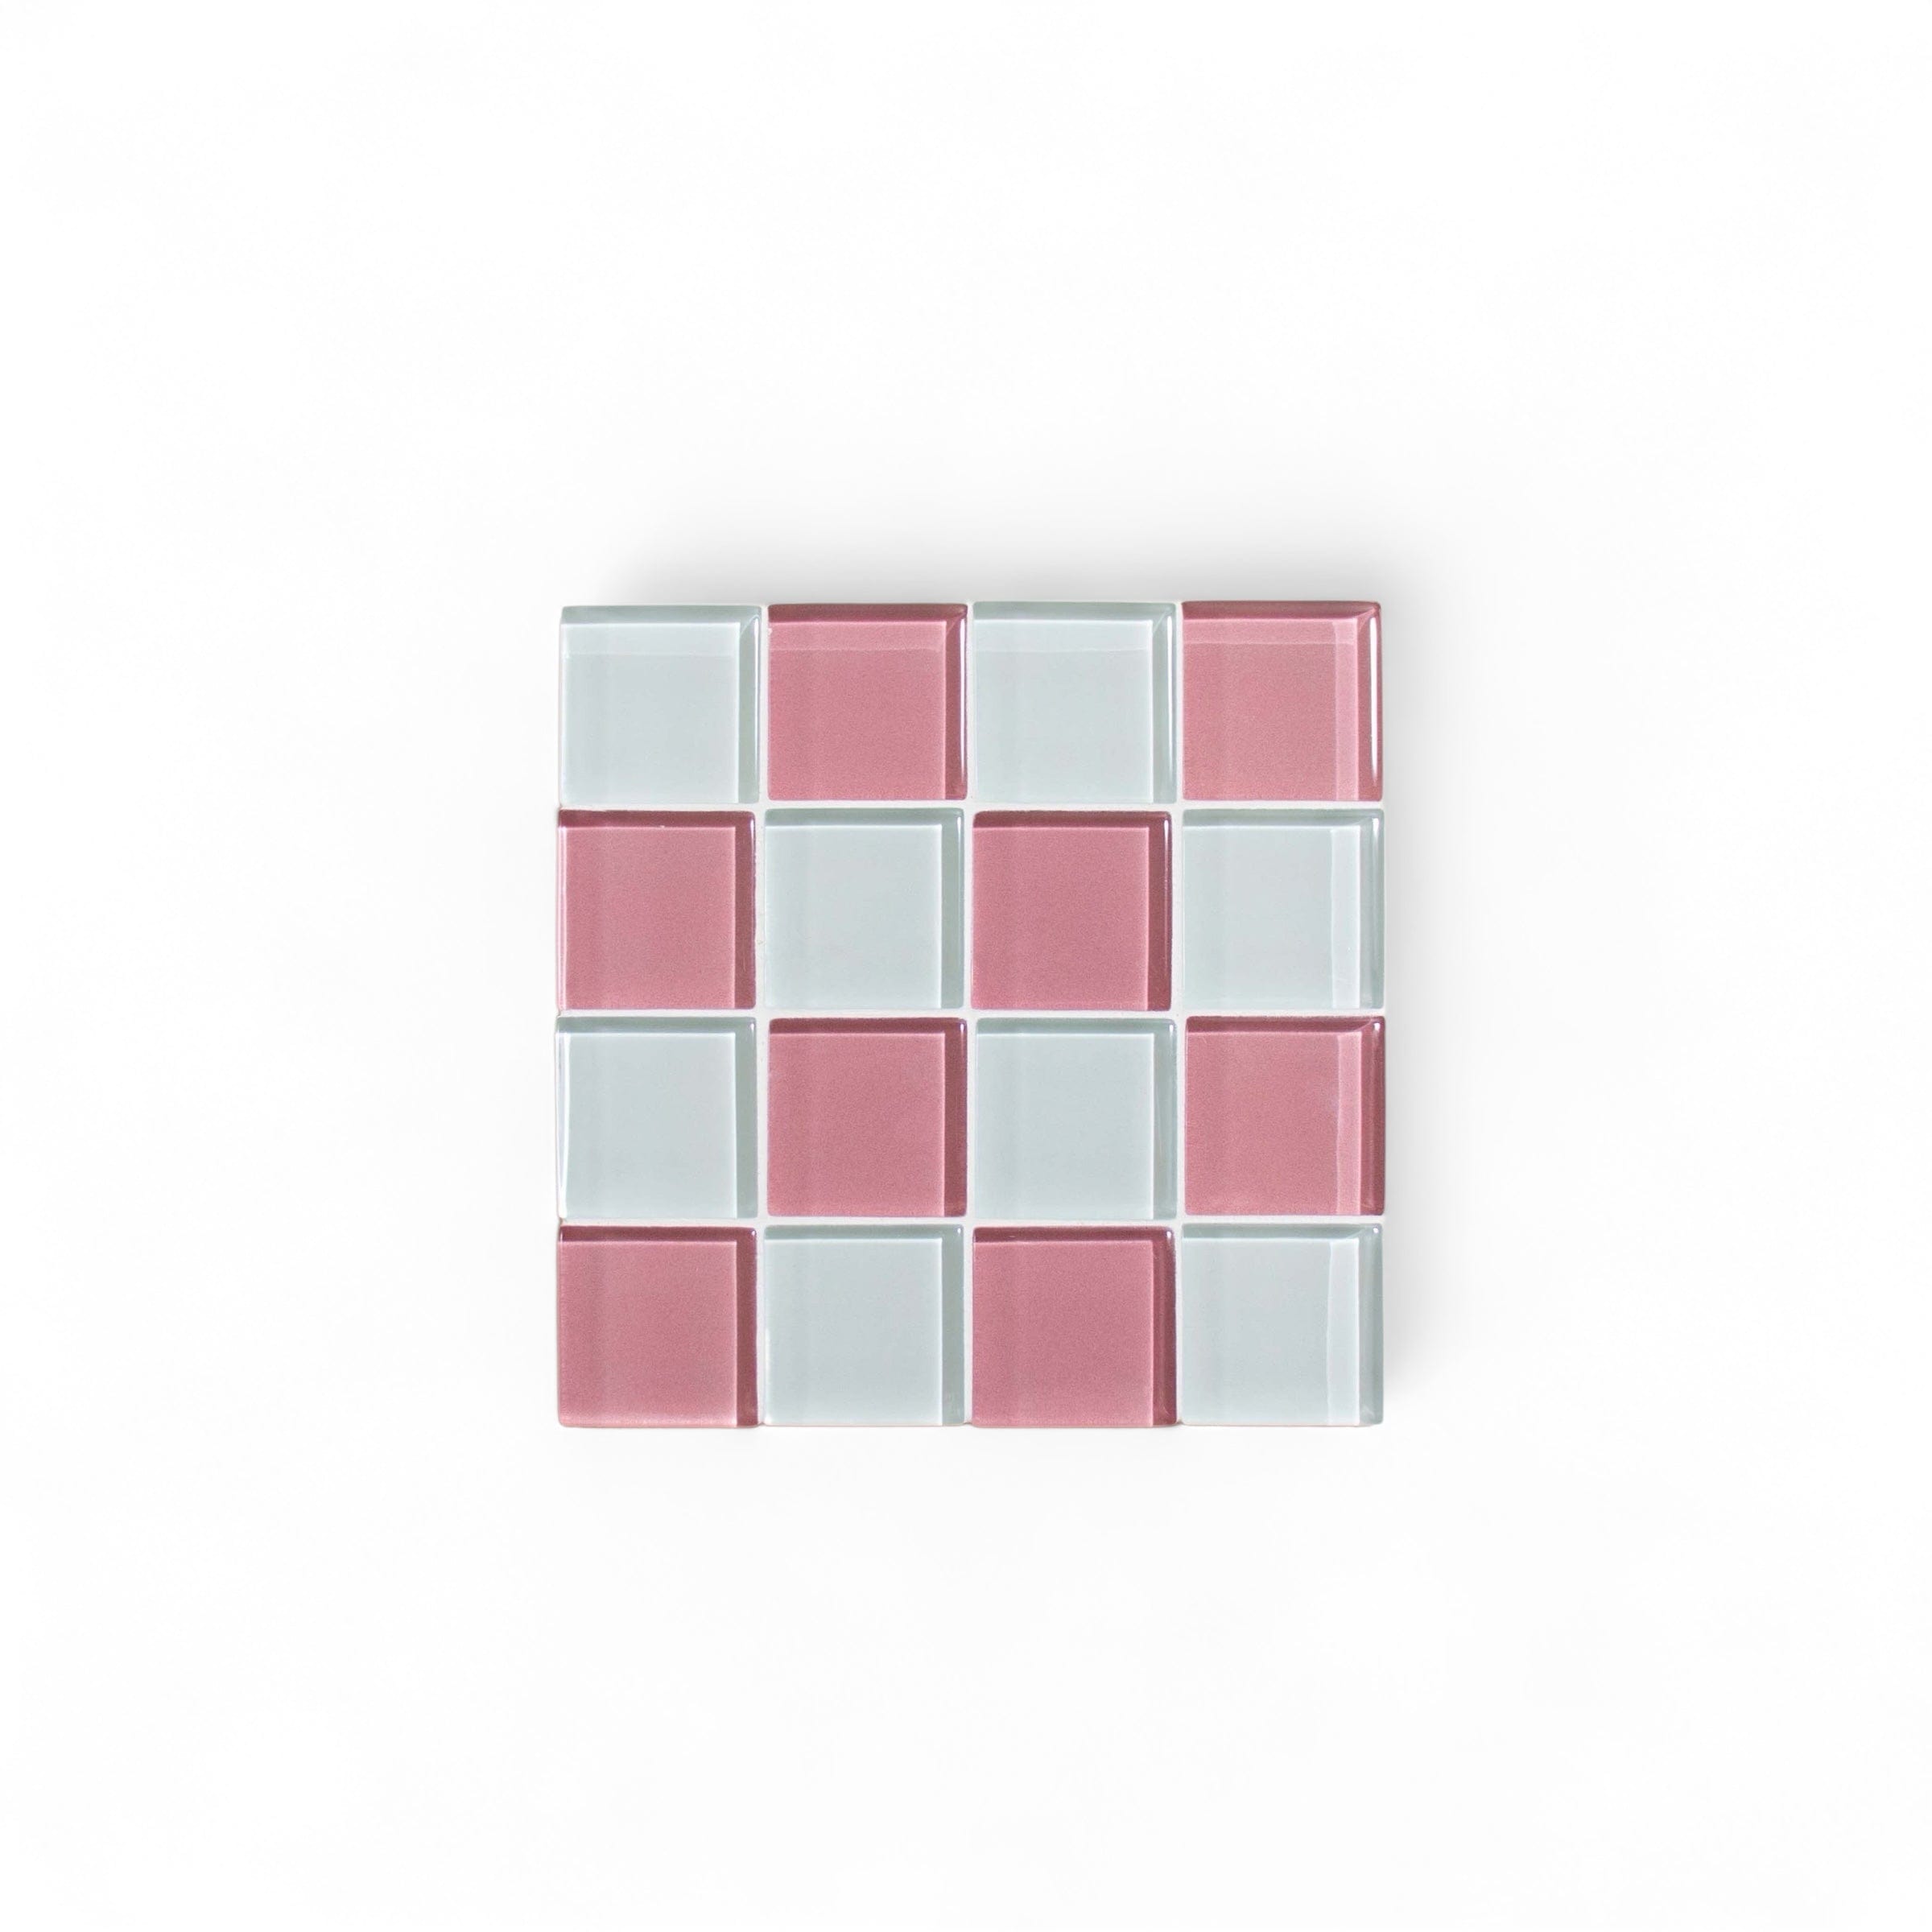 Glass Tile Coaster - Pink Himalayan Milk Chocolate by Subtle Art Studios